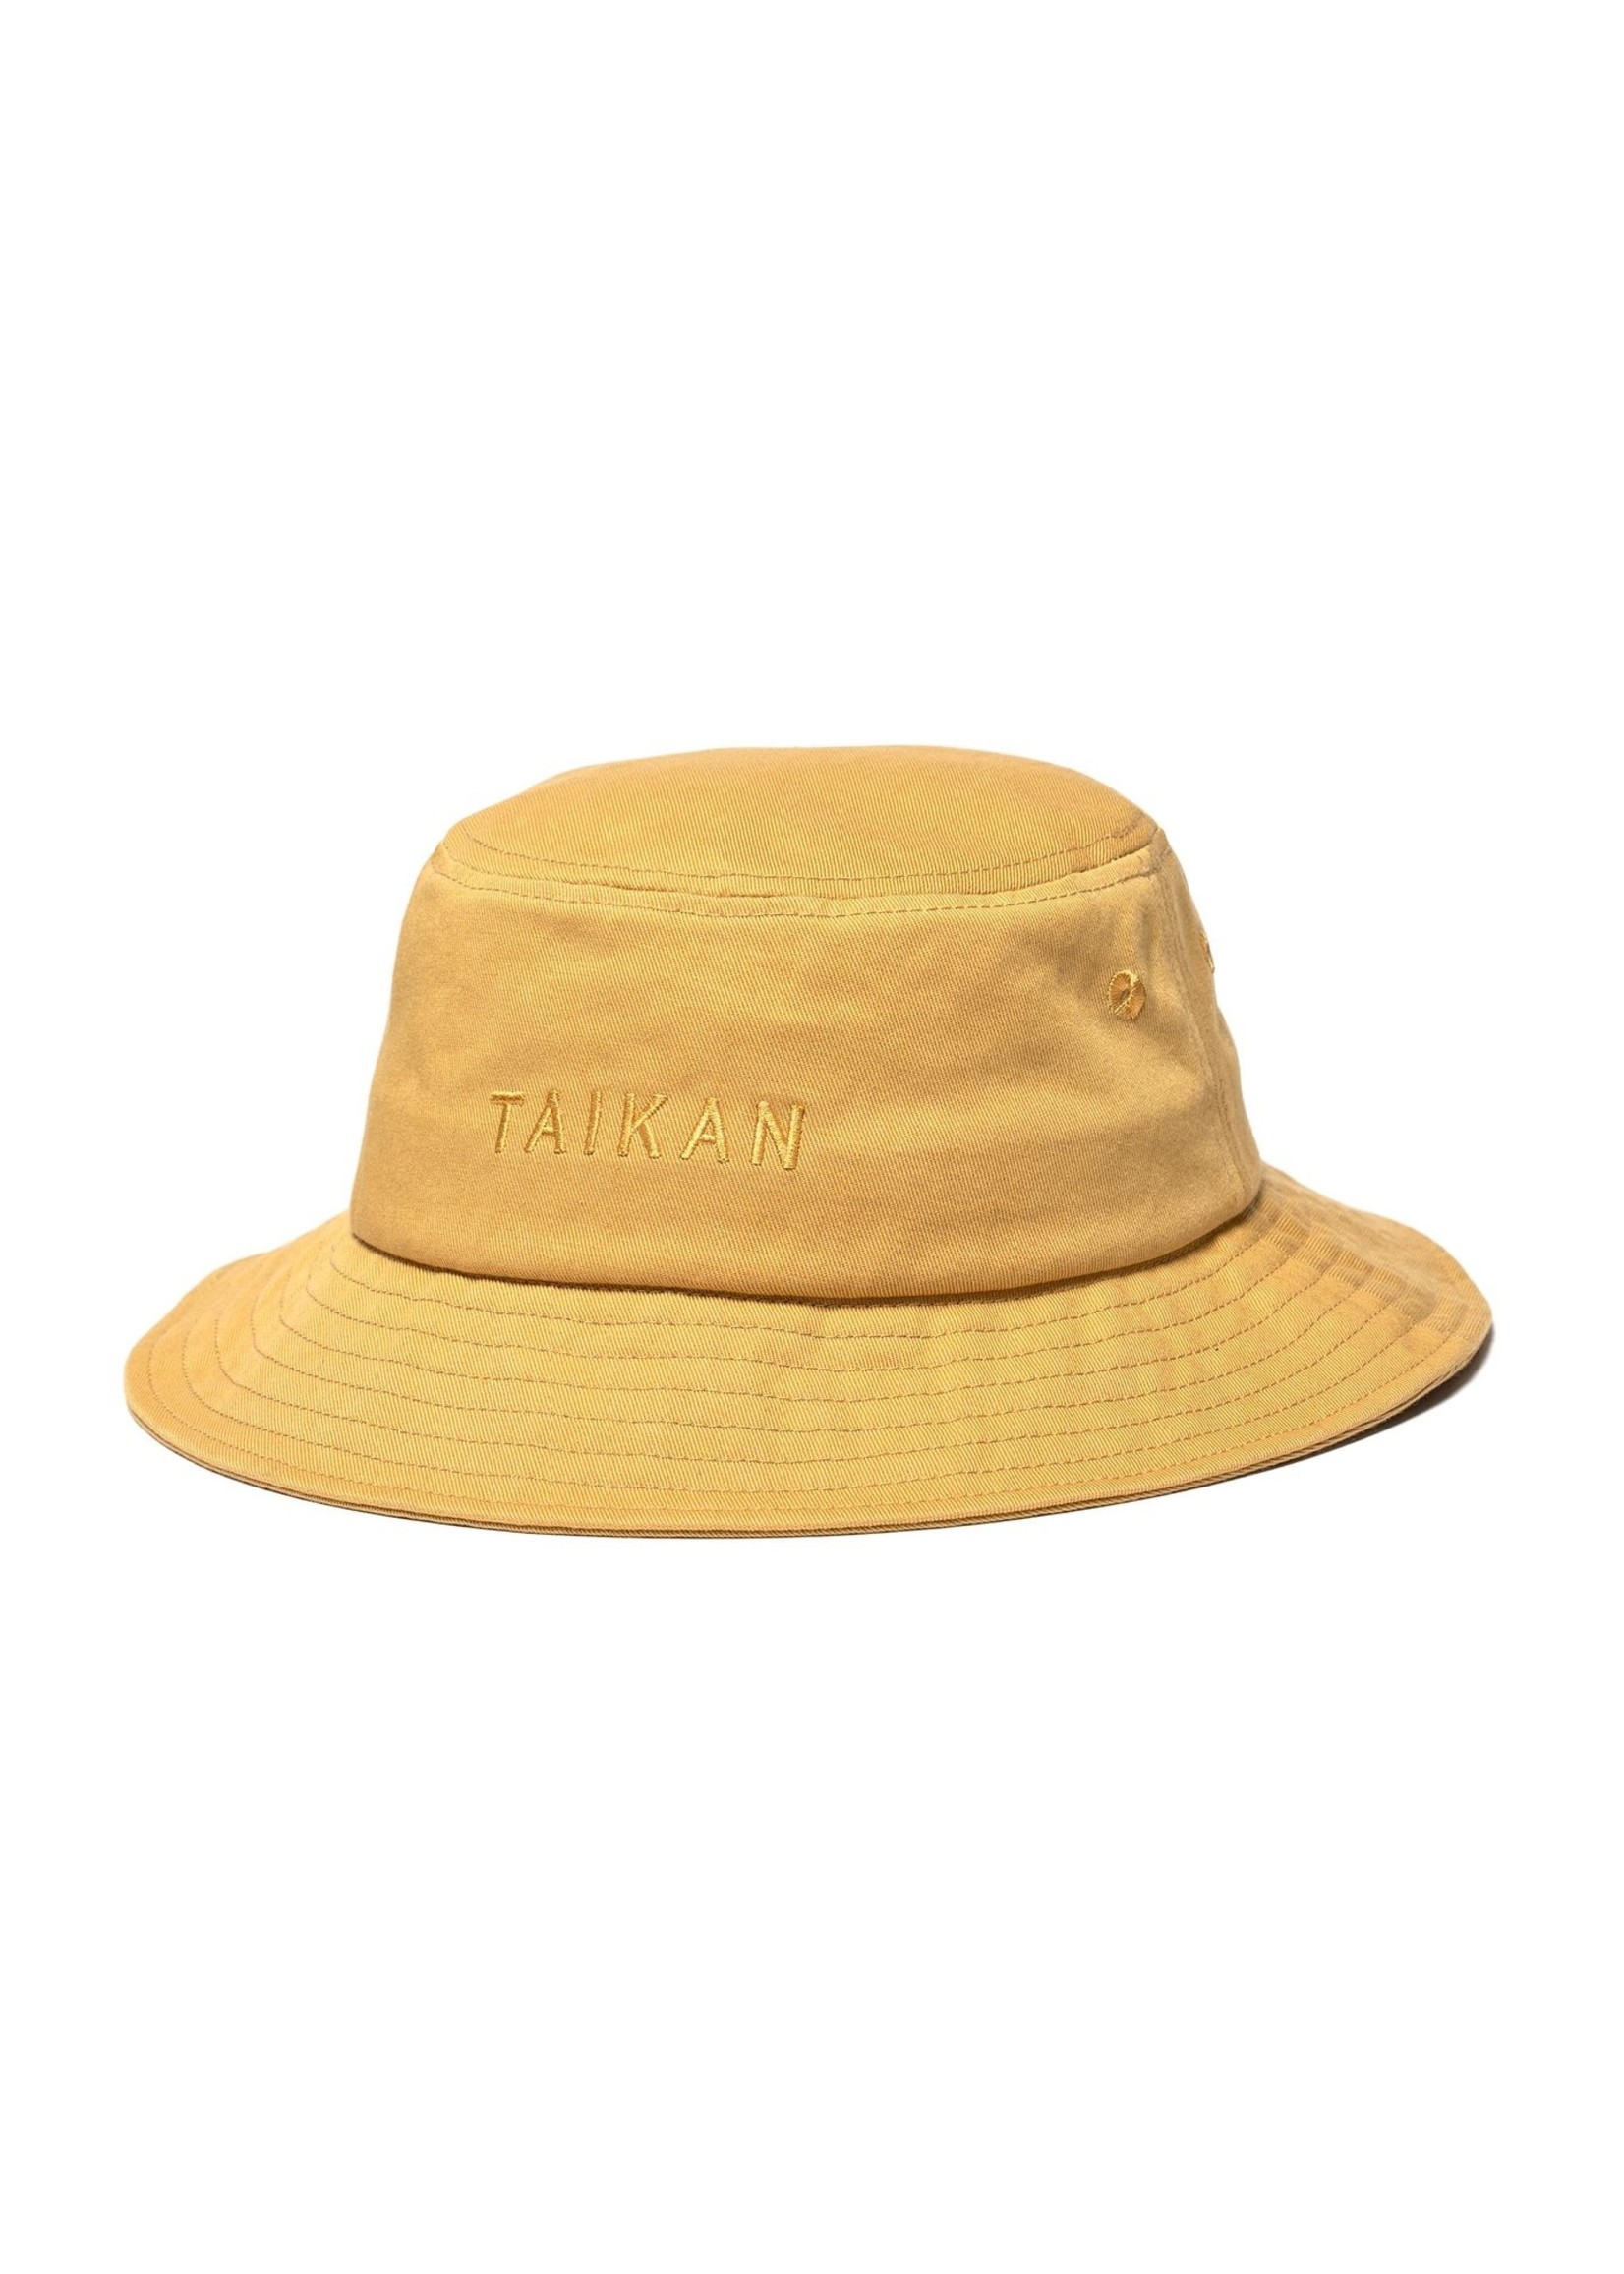 Taikan Taikan - Bucket Hat Tan